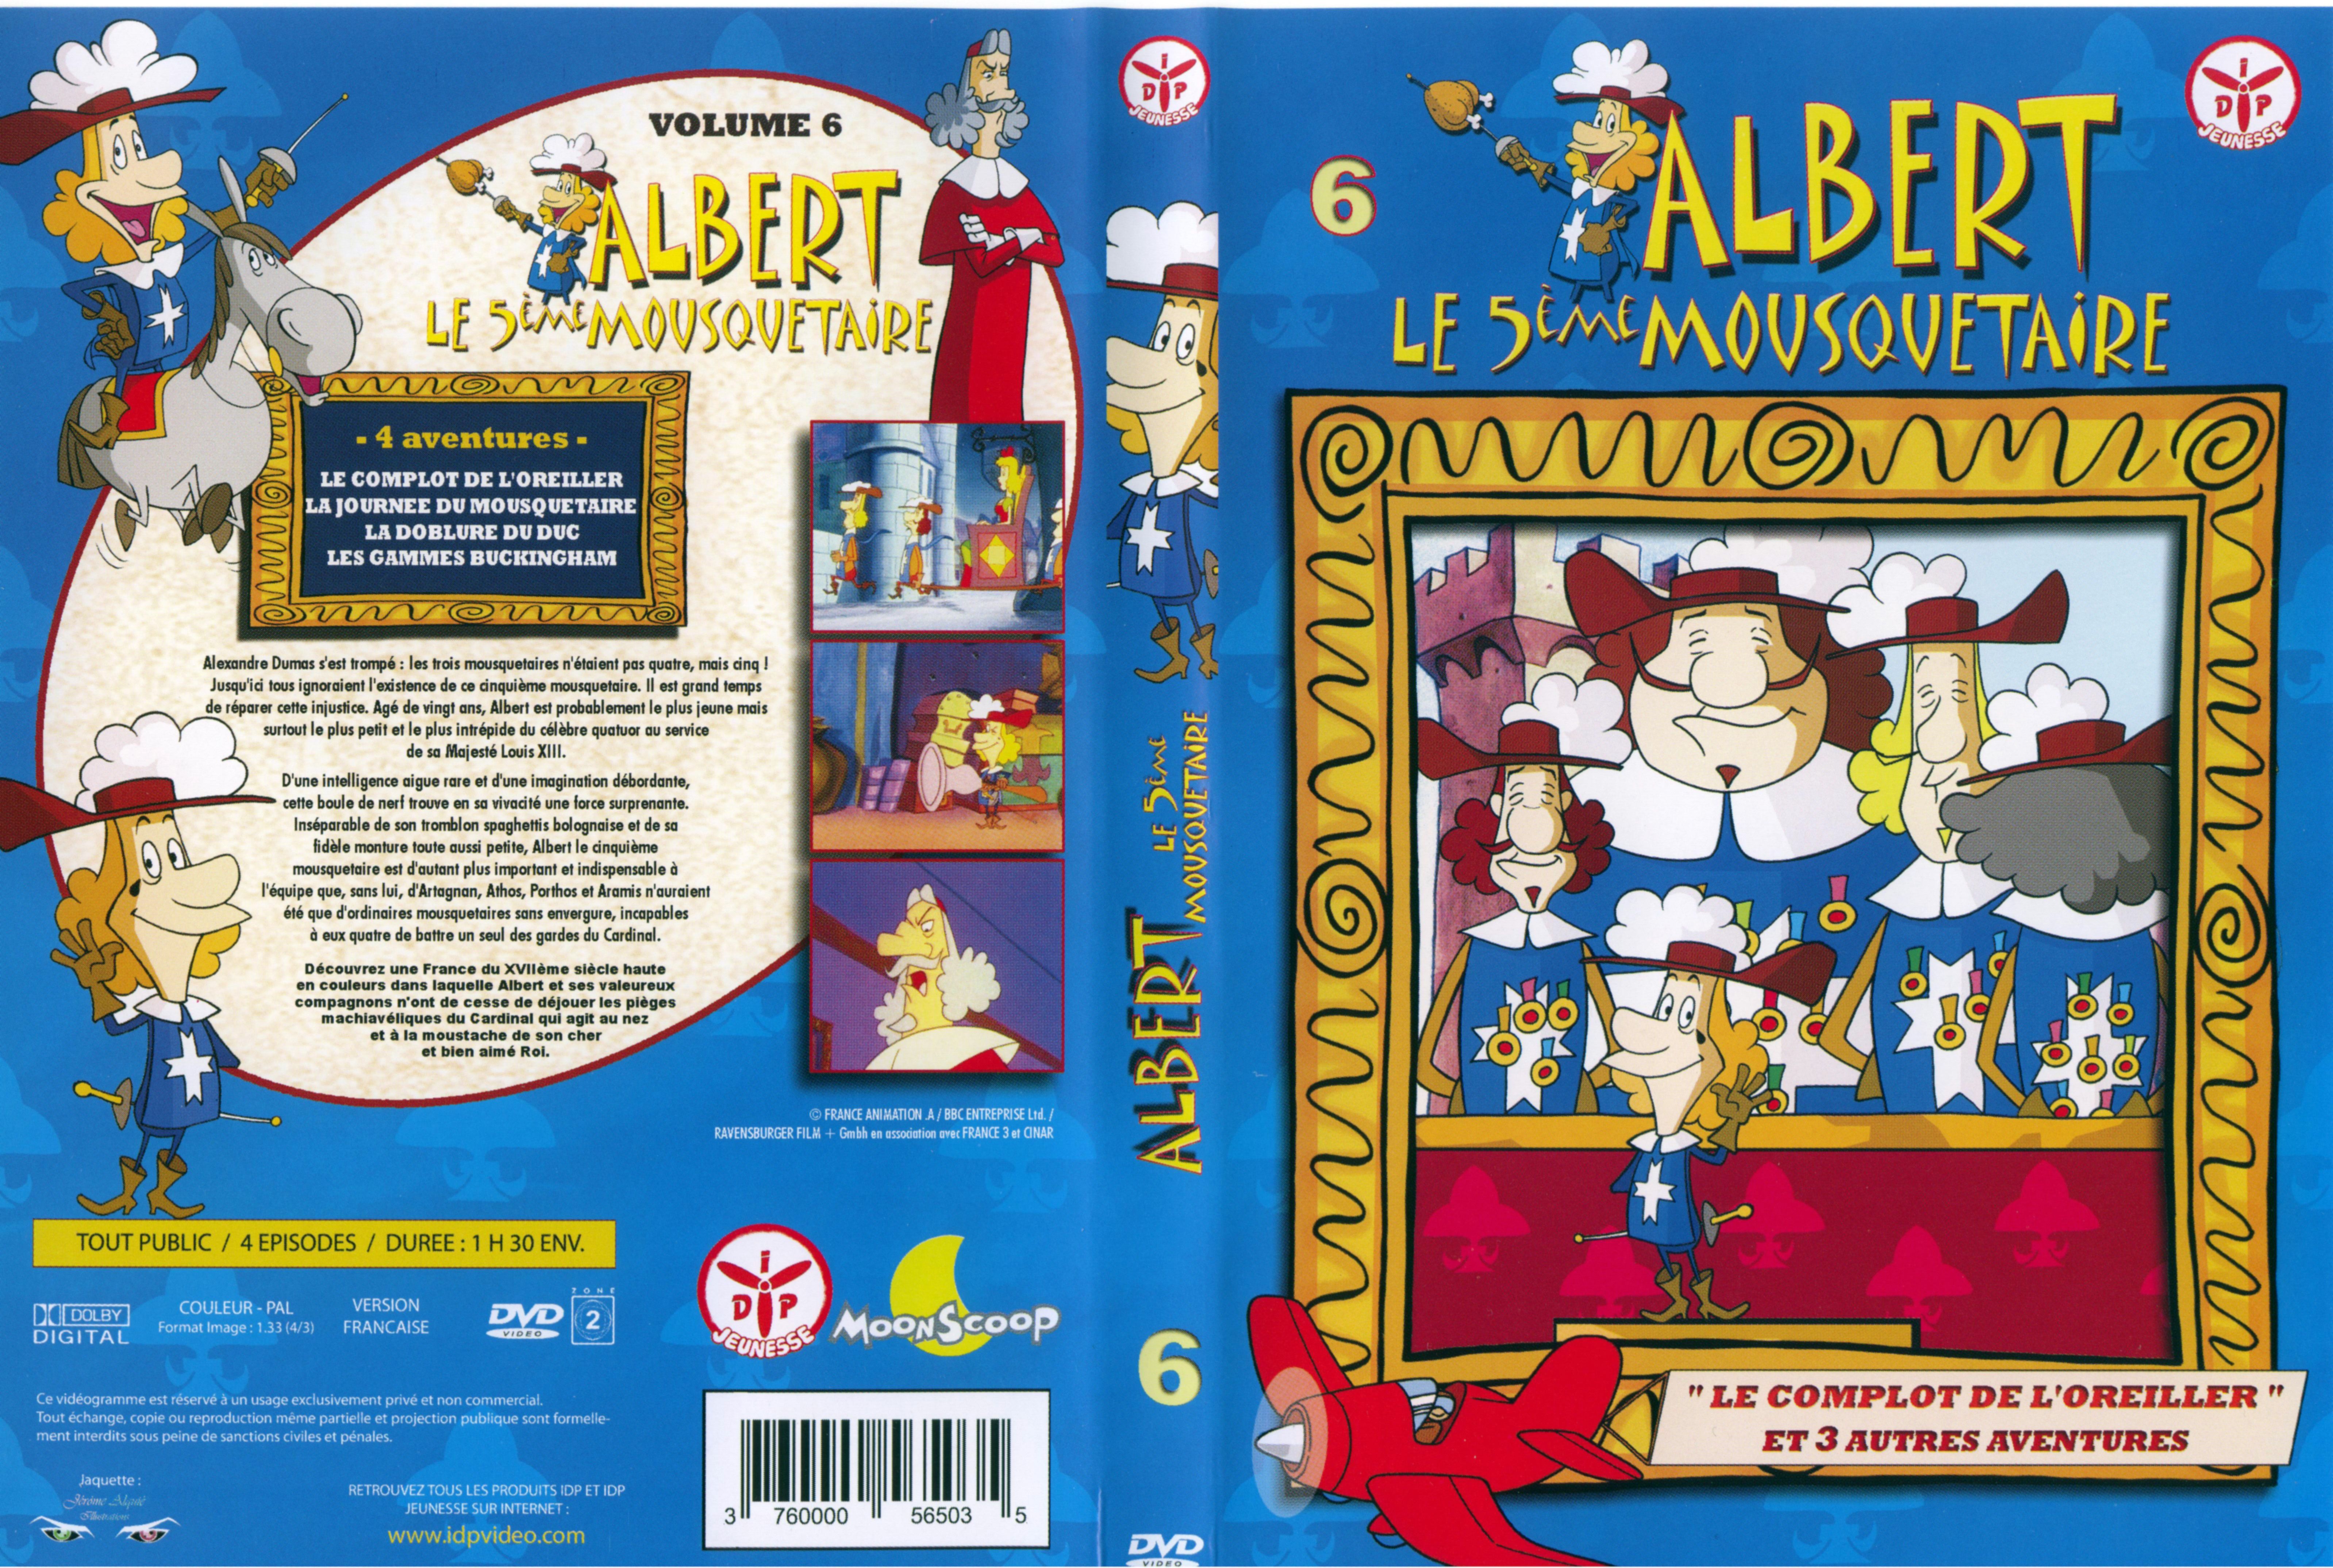 Jaquette DVD Albert le 5 me mousquetaire vol 6